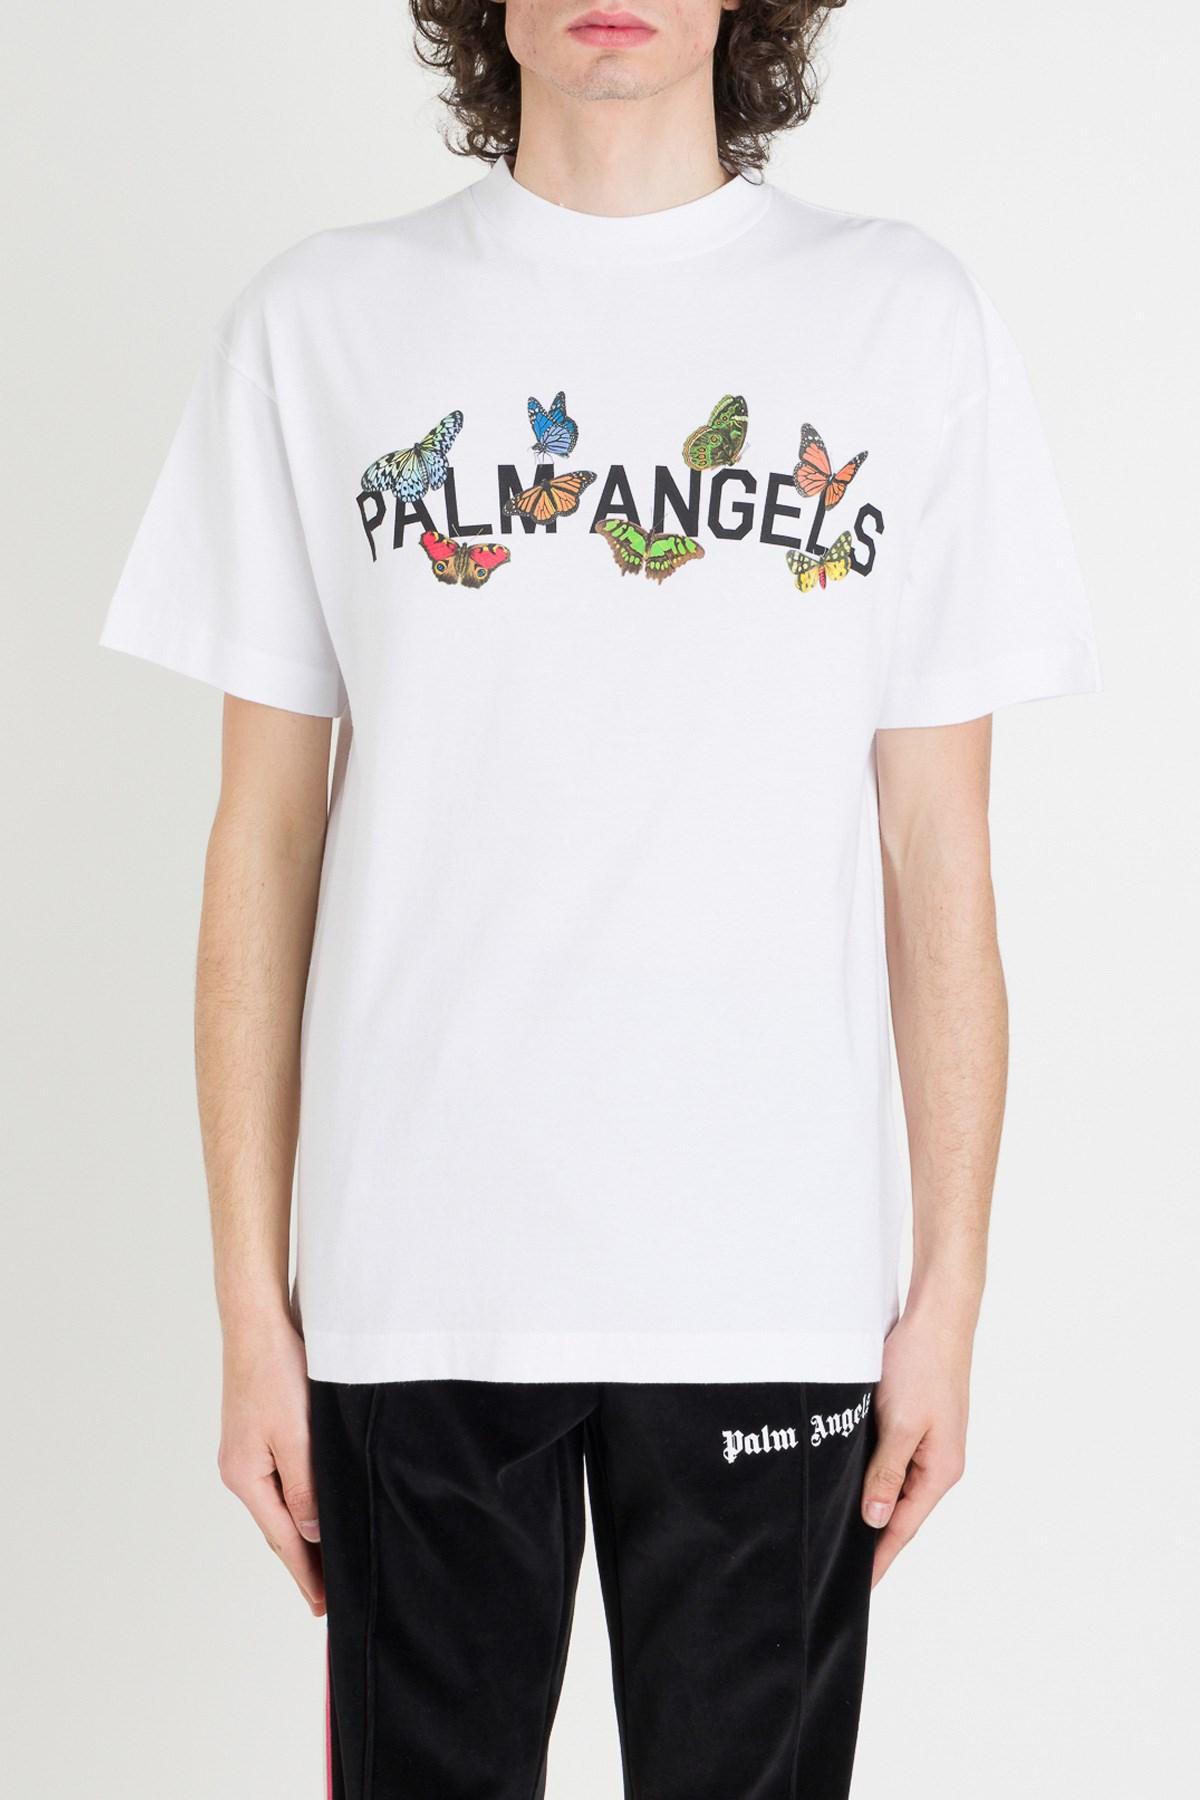 Herren T-Shirt Palm Angel Butterfly Alphabet Cotton Loose Kurzarm Men's T-shirt 